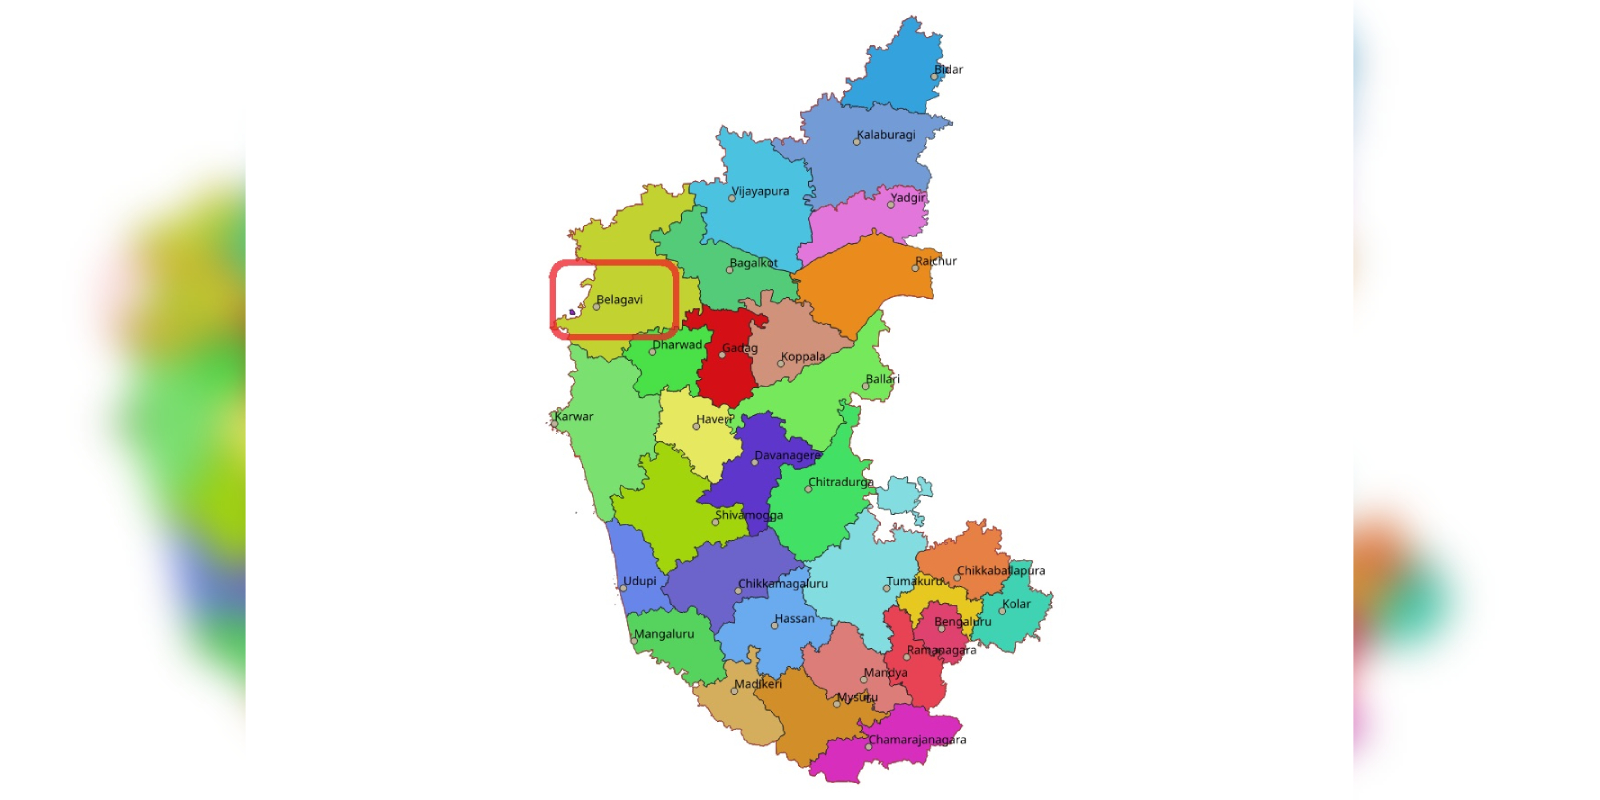 The map of Karnataka.